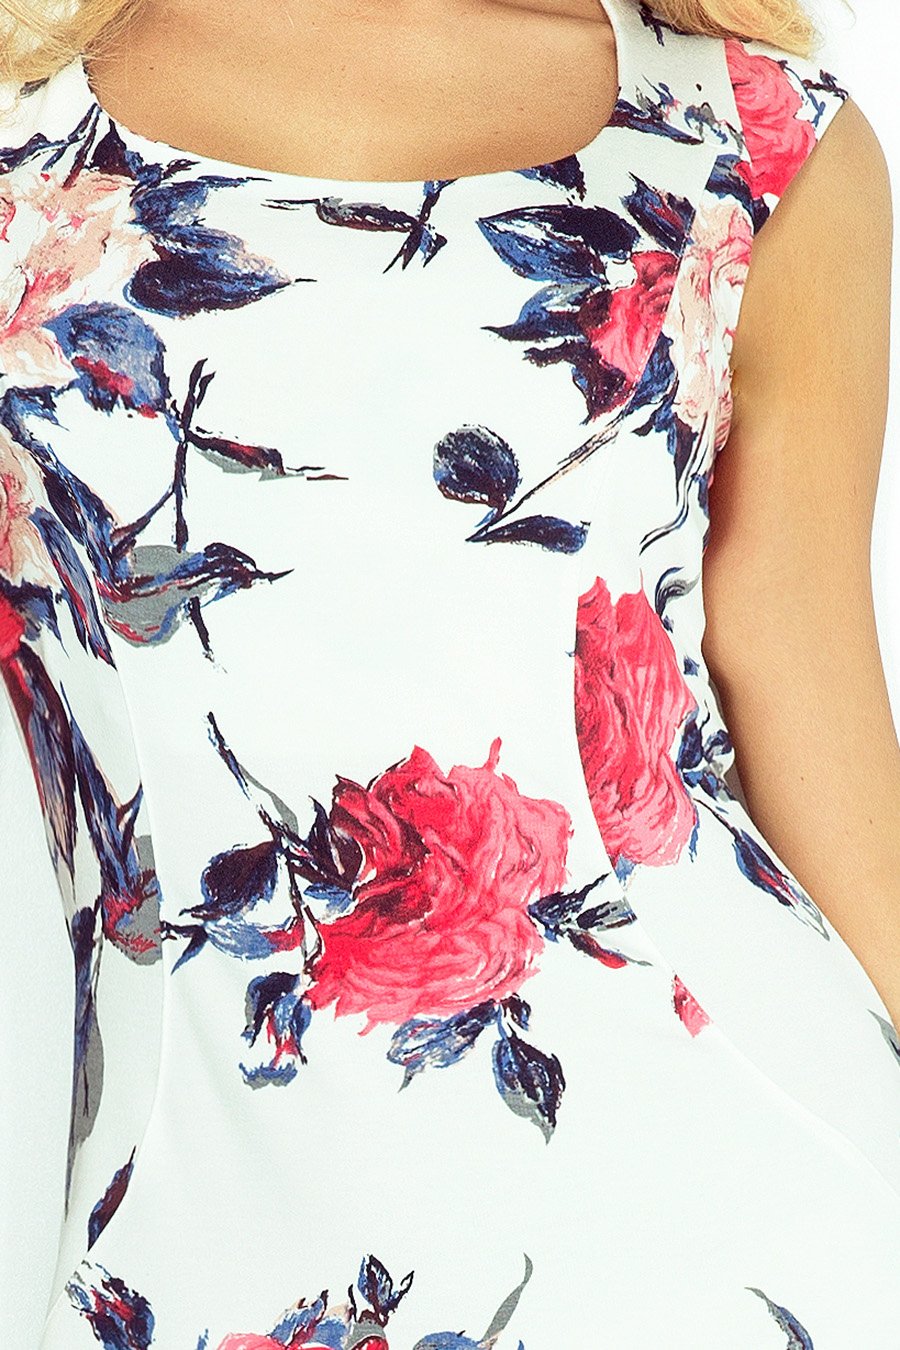 Γυναικείο φόρεμα Madison, Λευκό/Ροζ 7